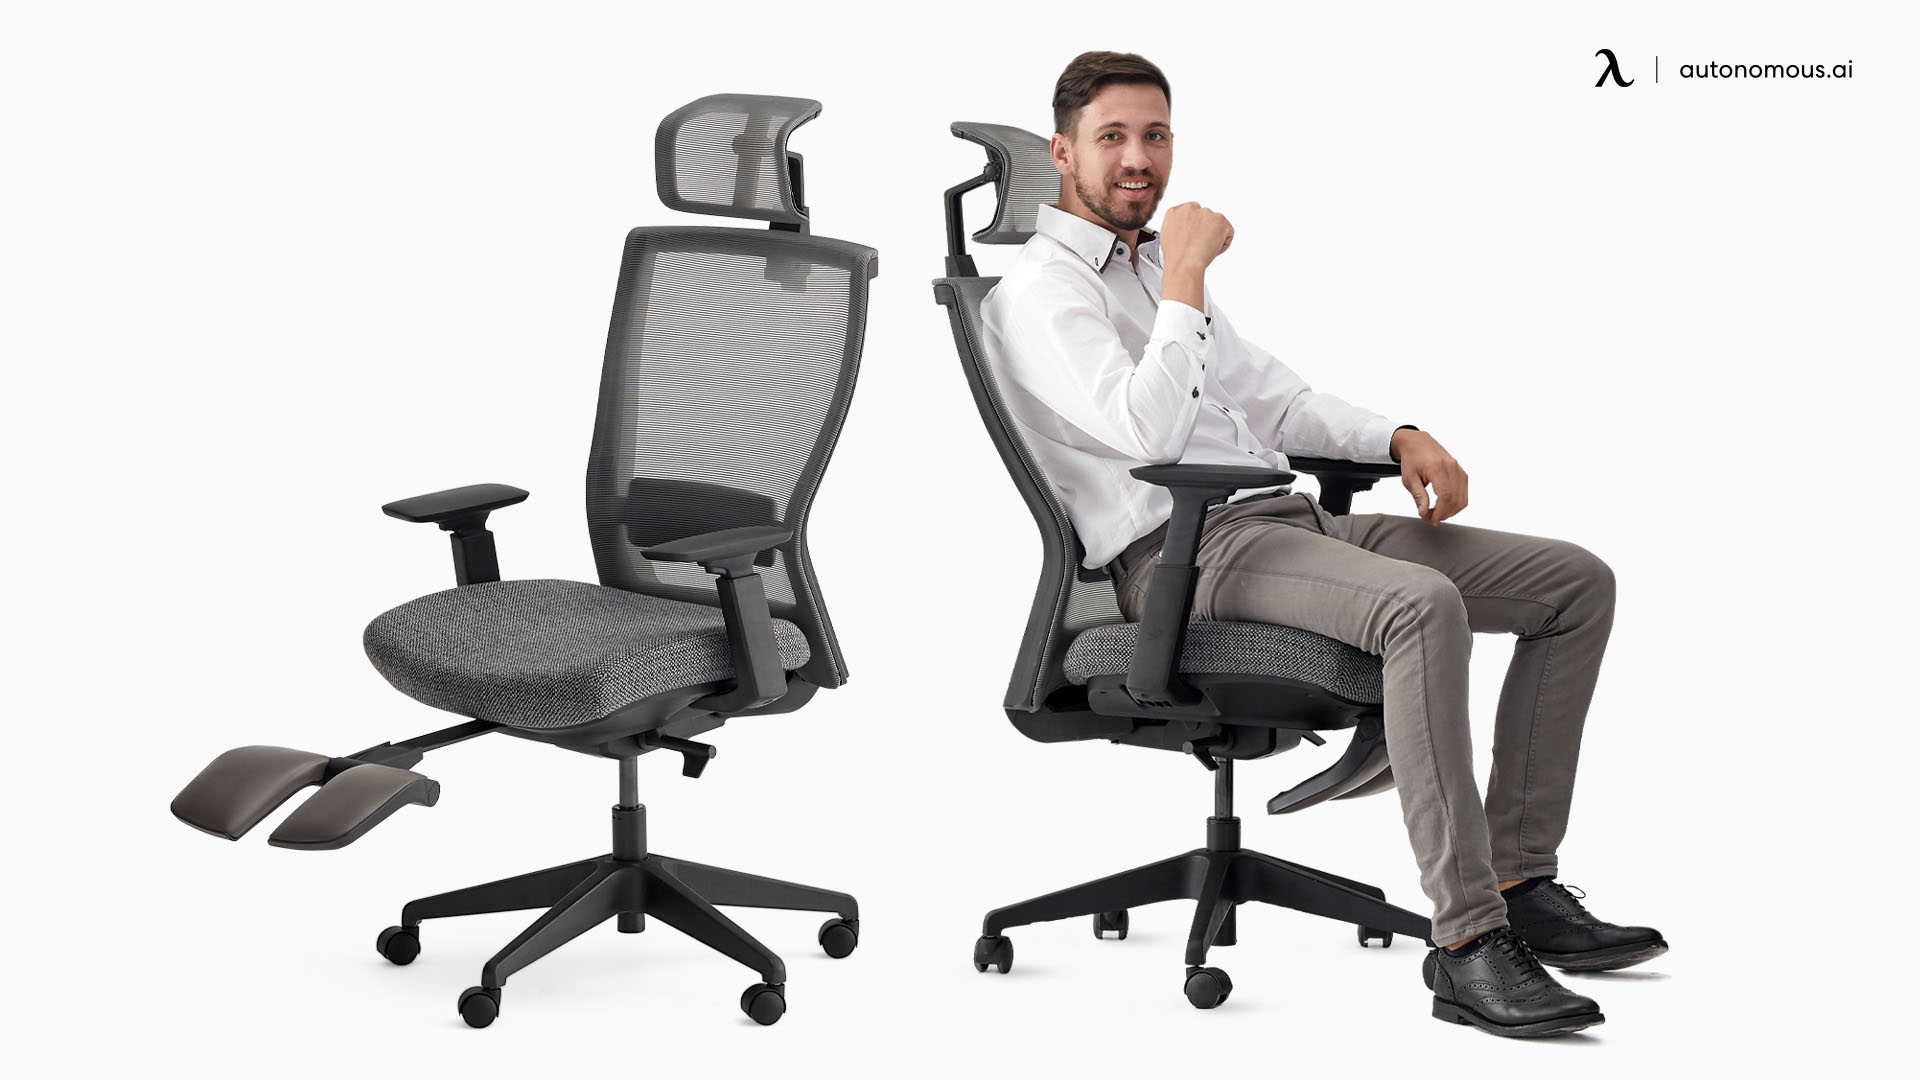 ErgoChair Recline light gray office chair